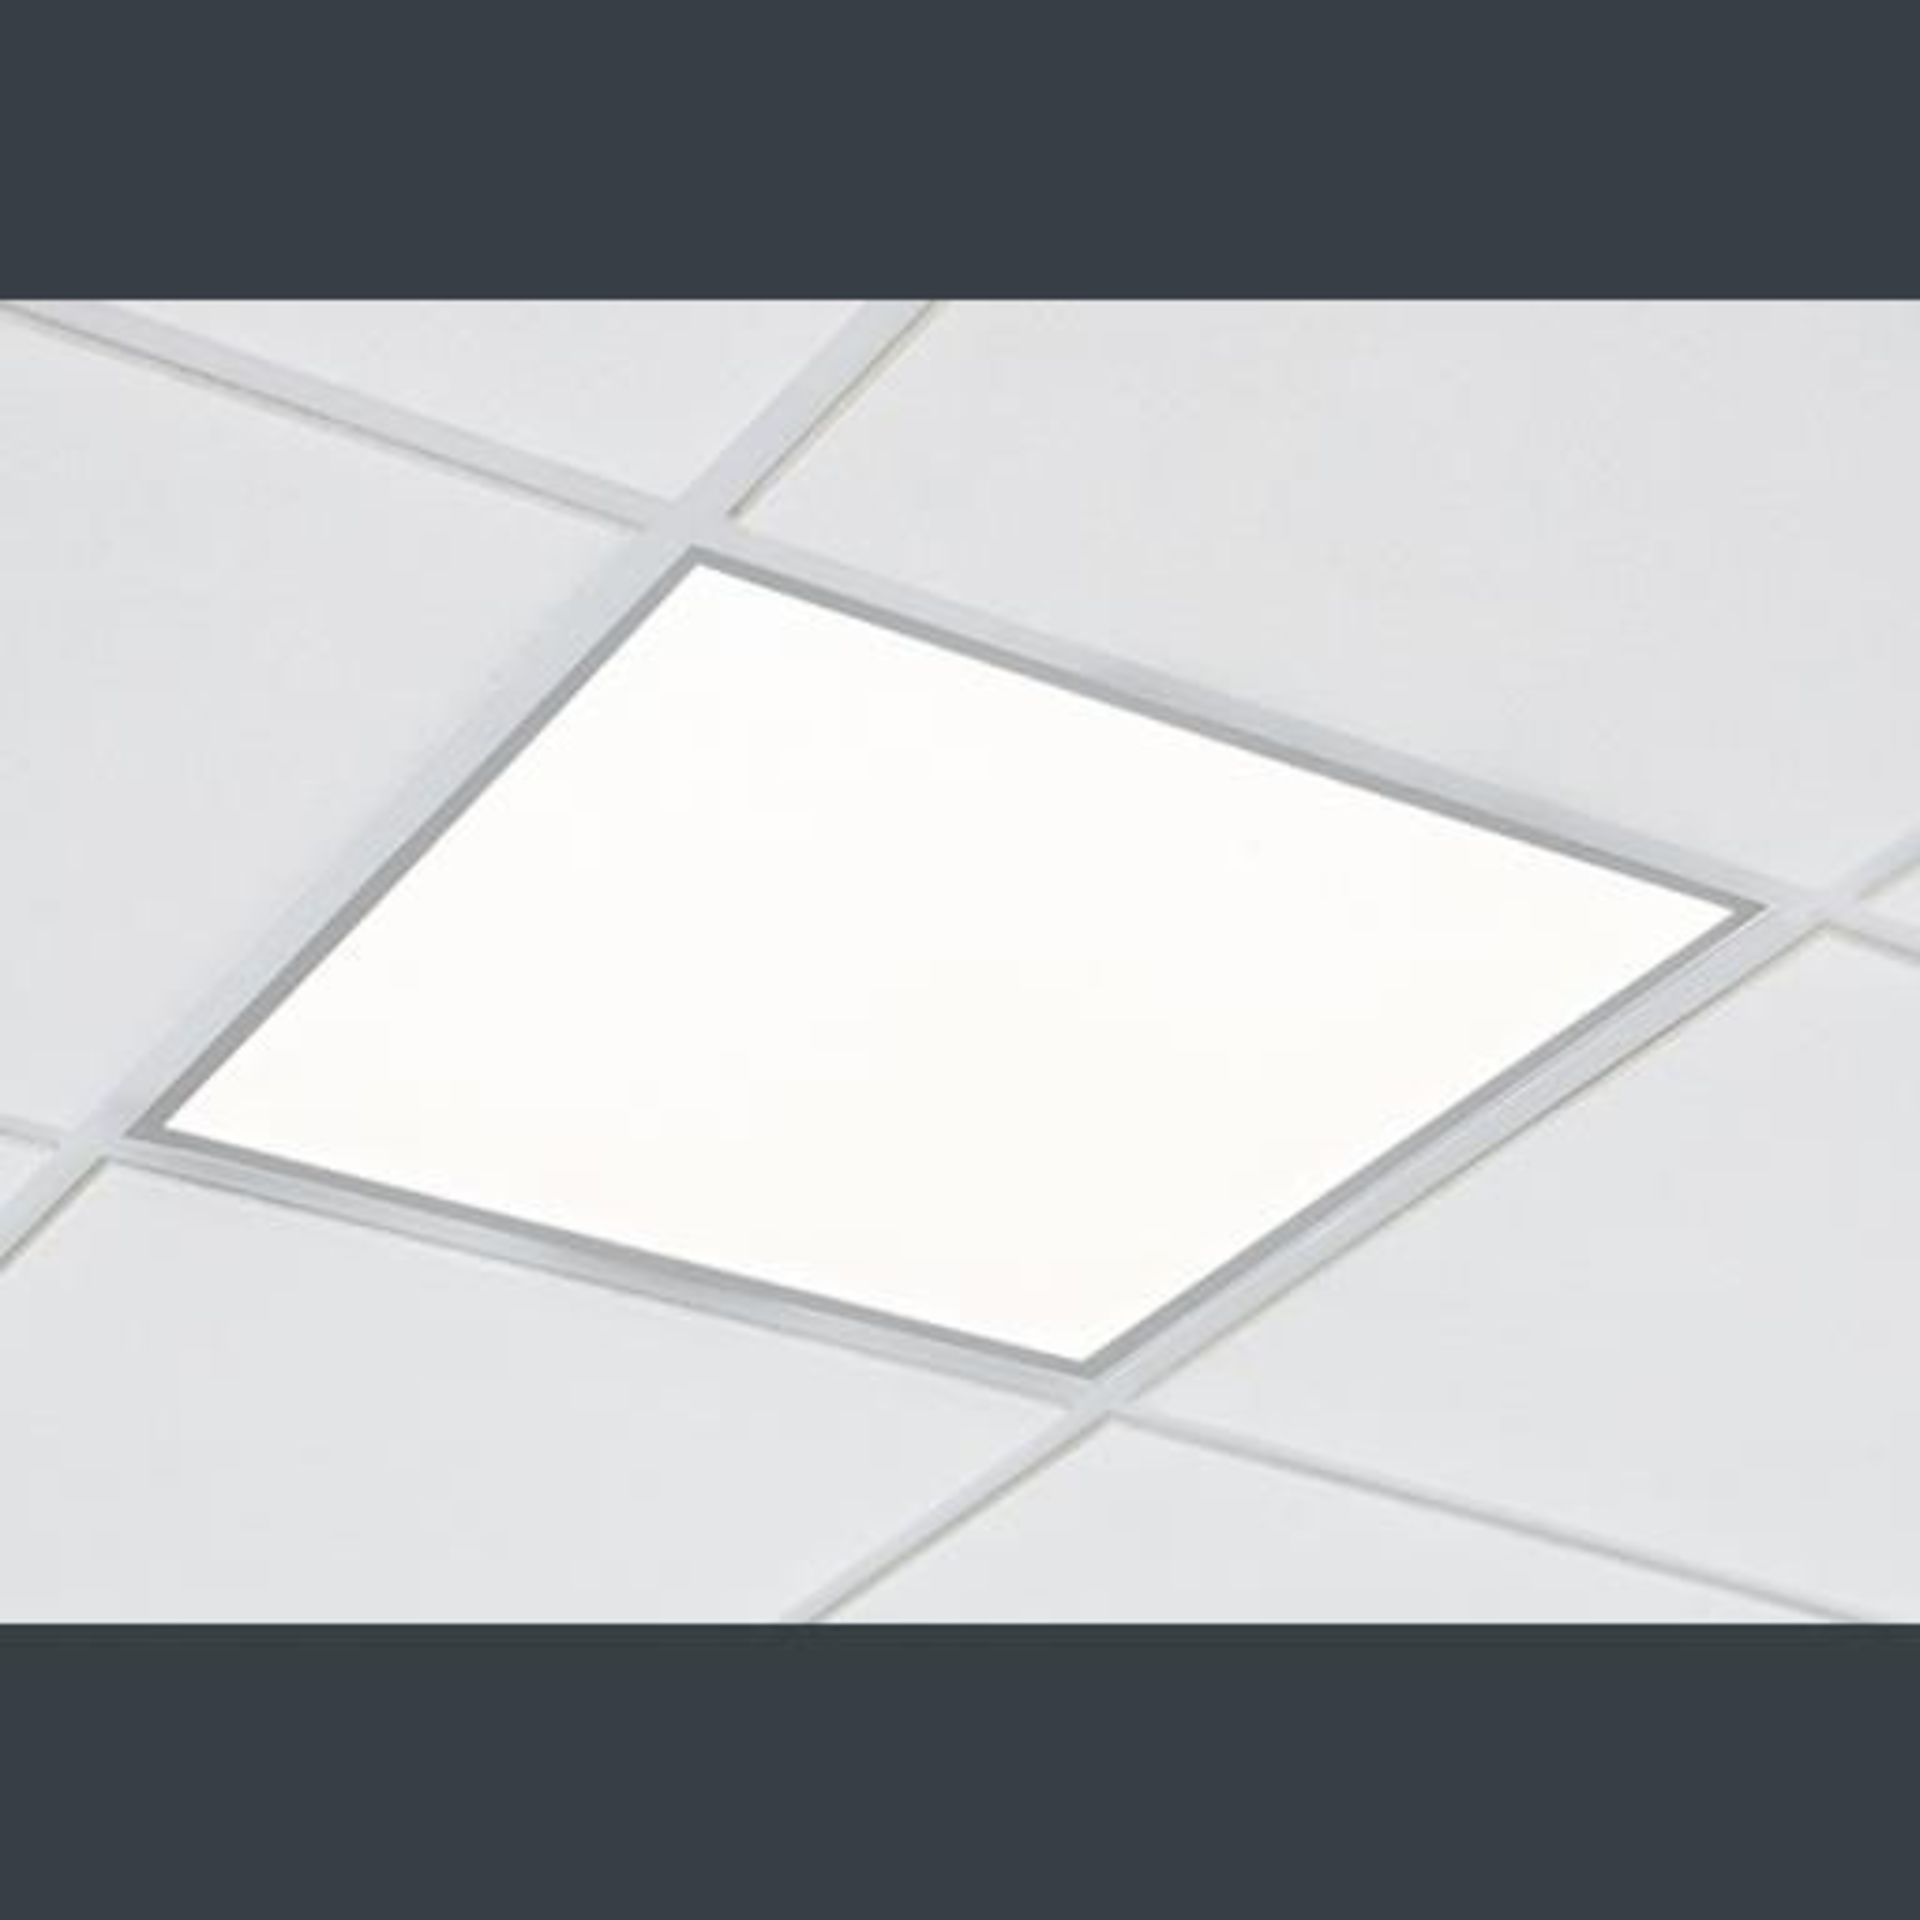 5 x Thorlux Radiance LG7 LED Recessed Luminaires - Image 6 of 8